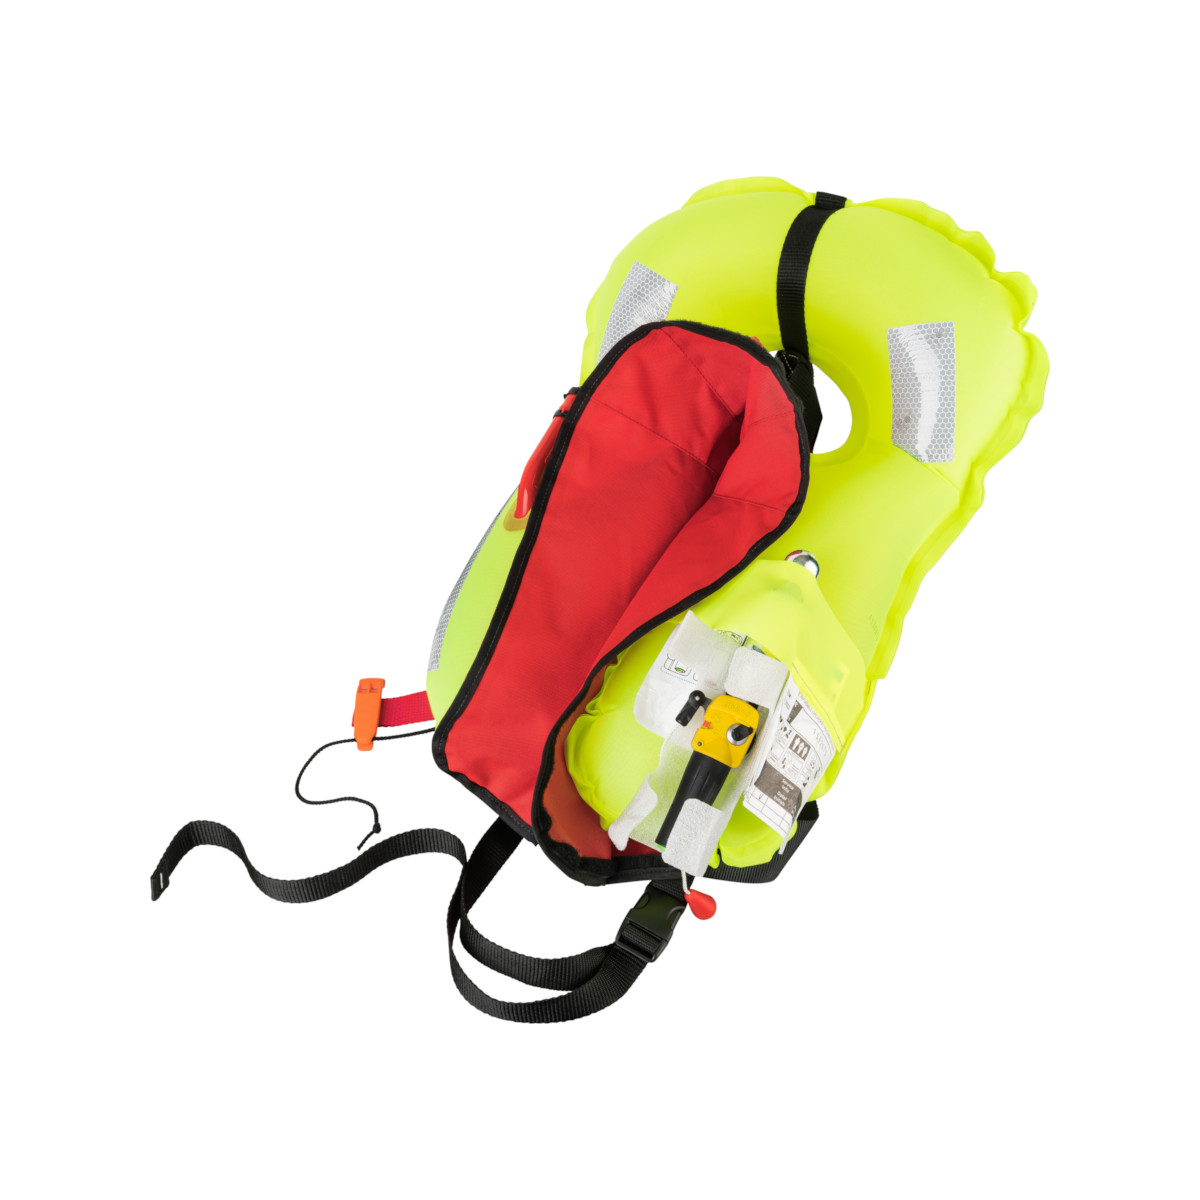 Lot : 12skipper gilet de sauvetage automatique 300N ISO avec harnais - rouge, avec Marinepool Lifeline et kit de réarmement